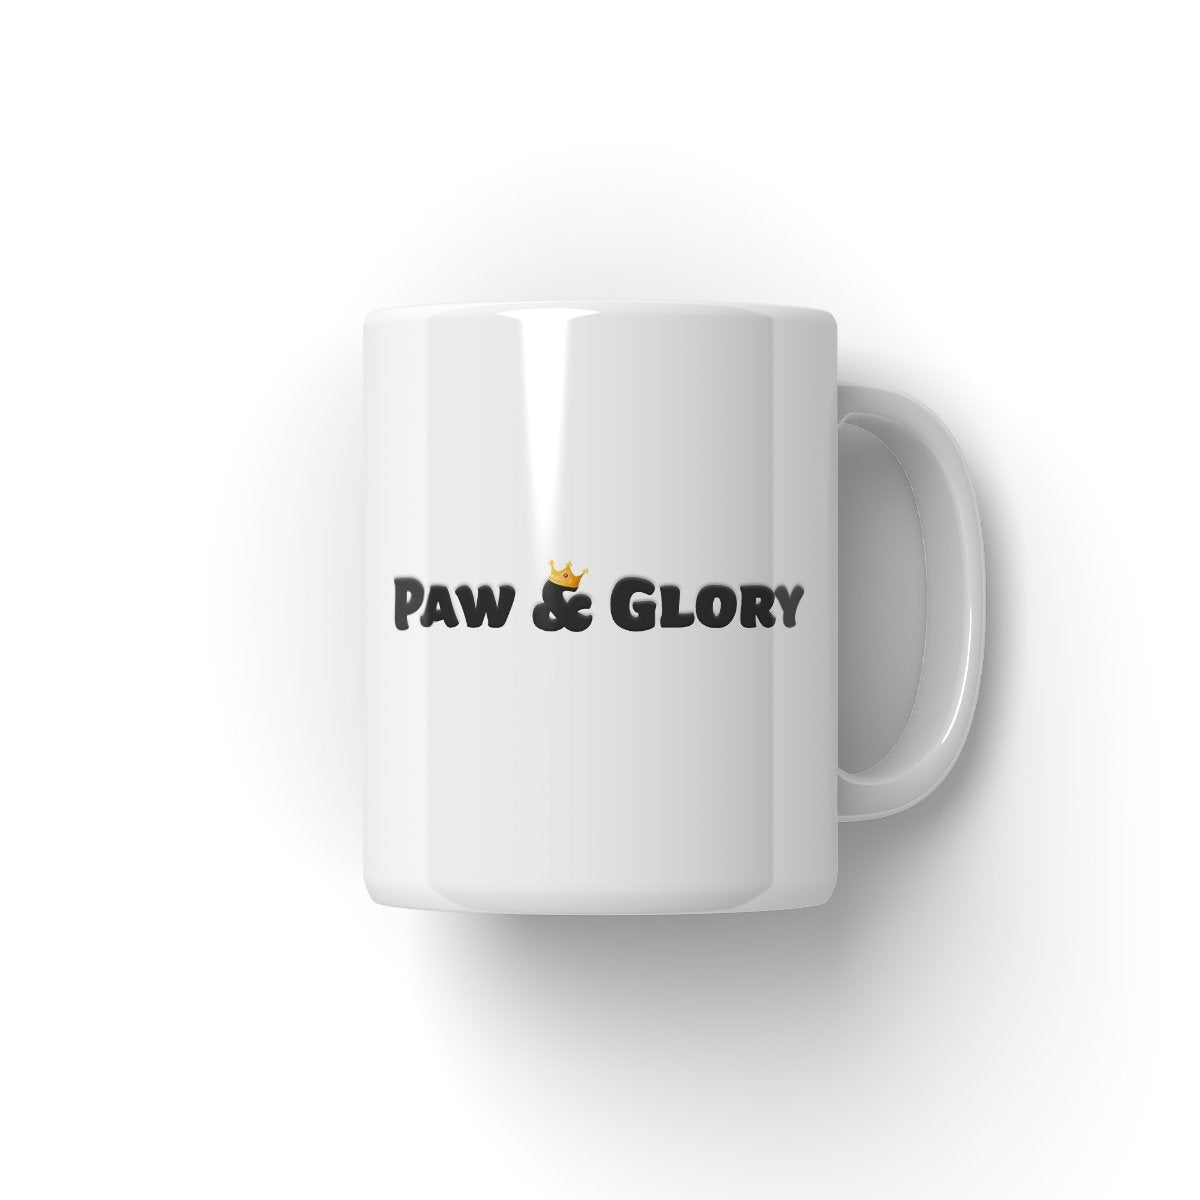 The Porsha: Custom Pet Coffee Mug - cat mug, pet mug portraits, pet portrait mugs, Pet mug art, Anniversary gifts, custom pet mugs